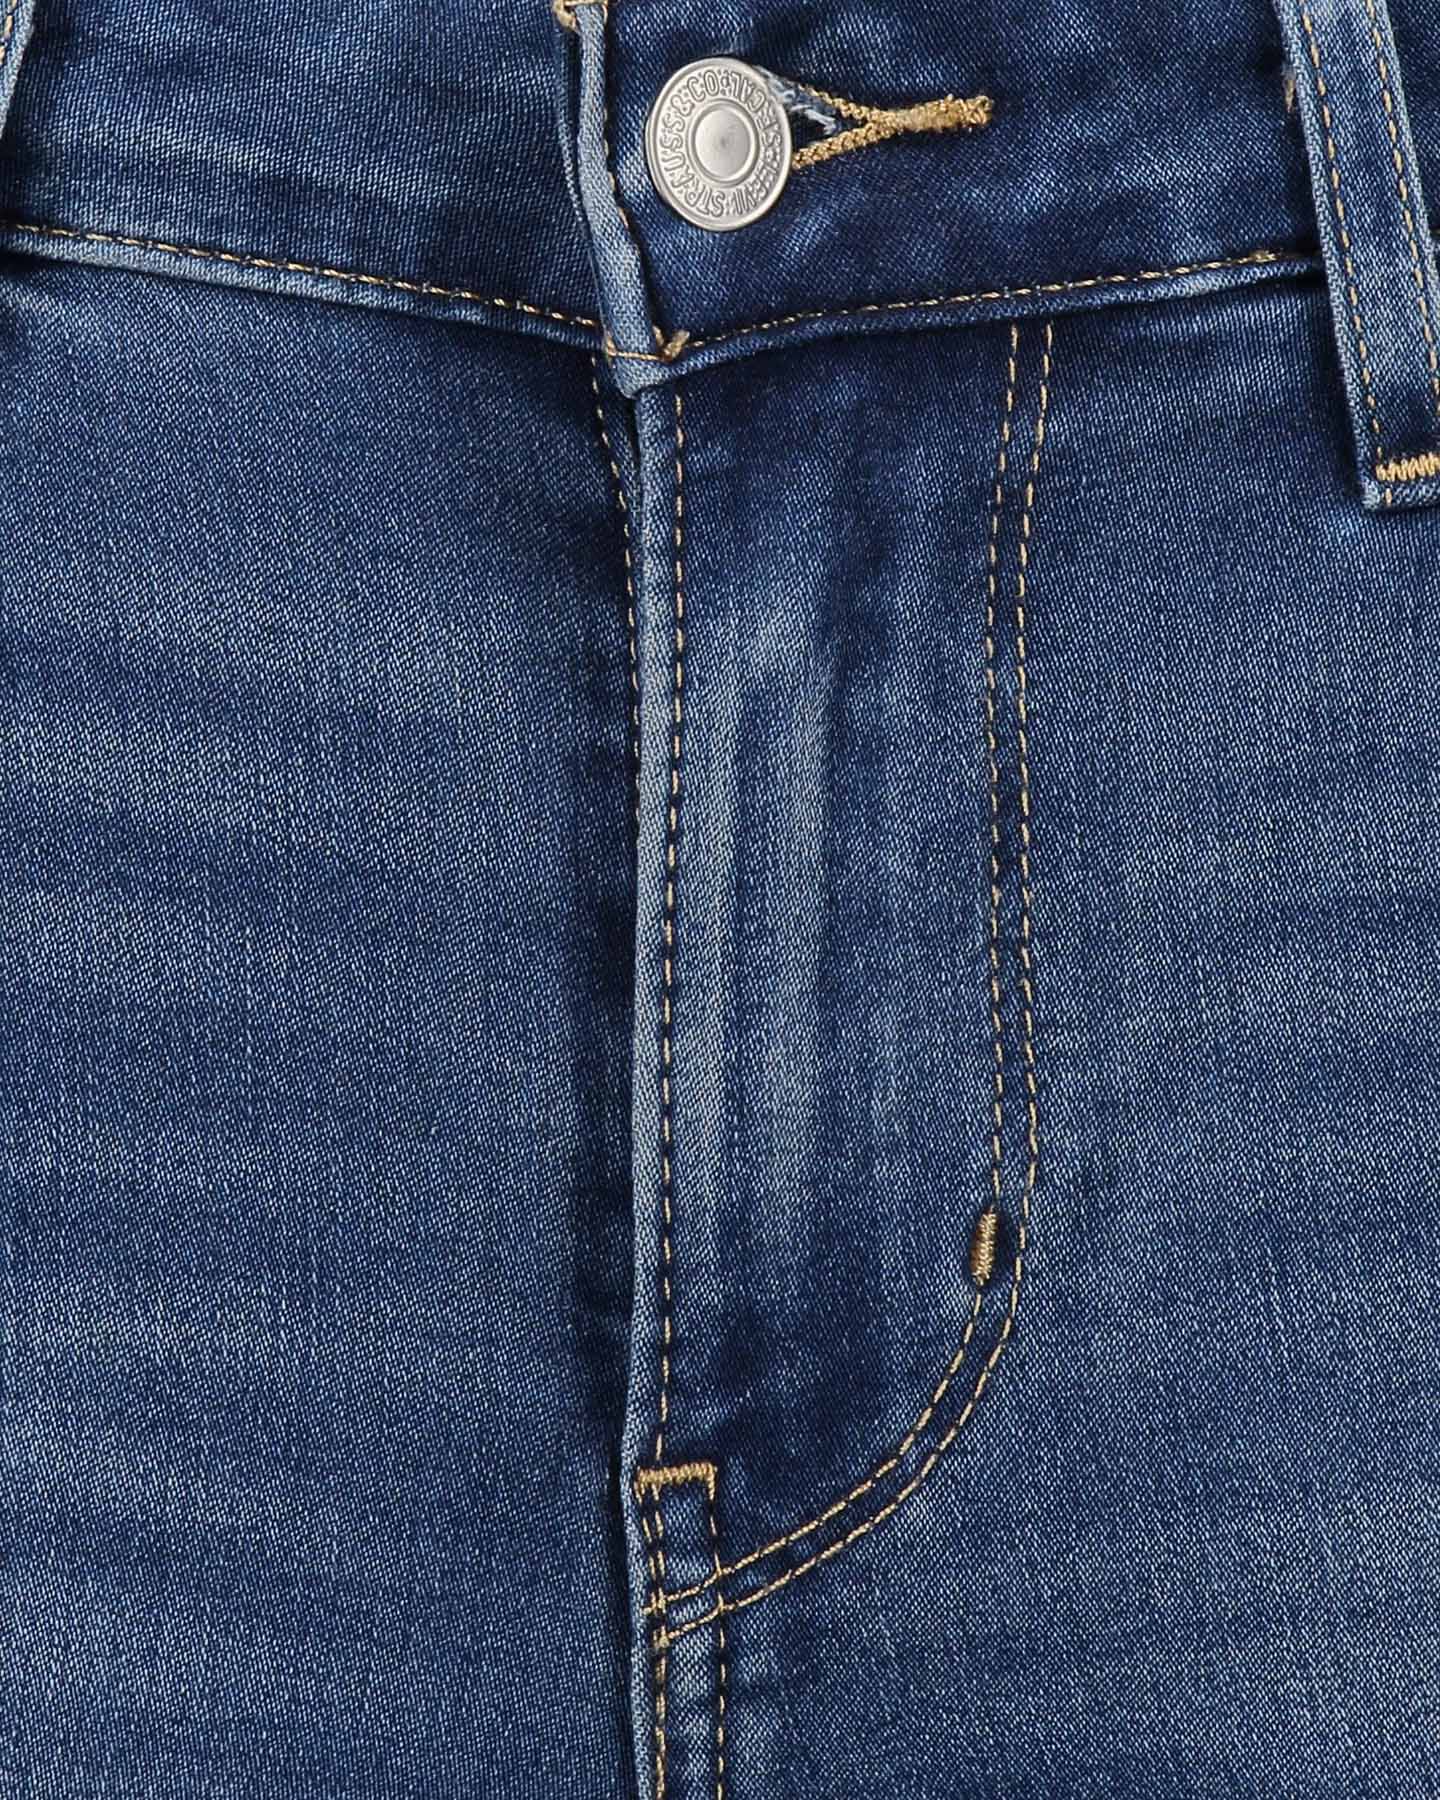  Jeans LEVI'S 711 SKINNY W S4070518|0417|26 scatto 3